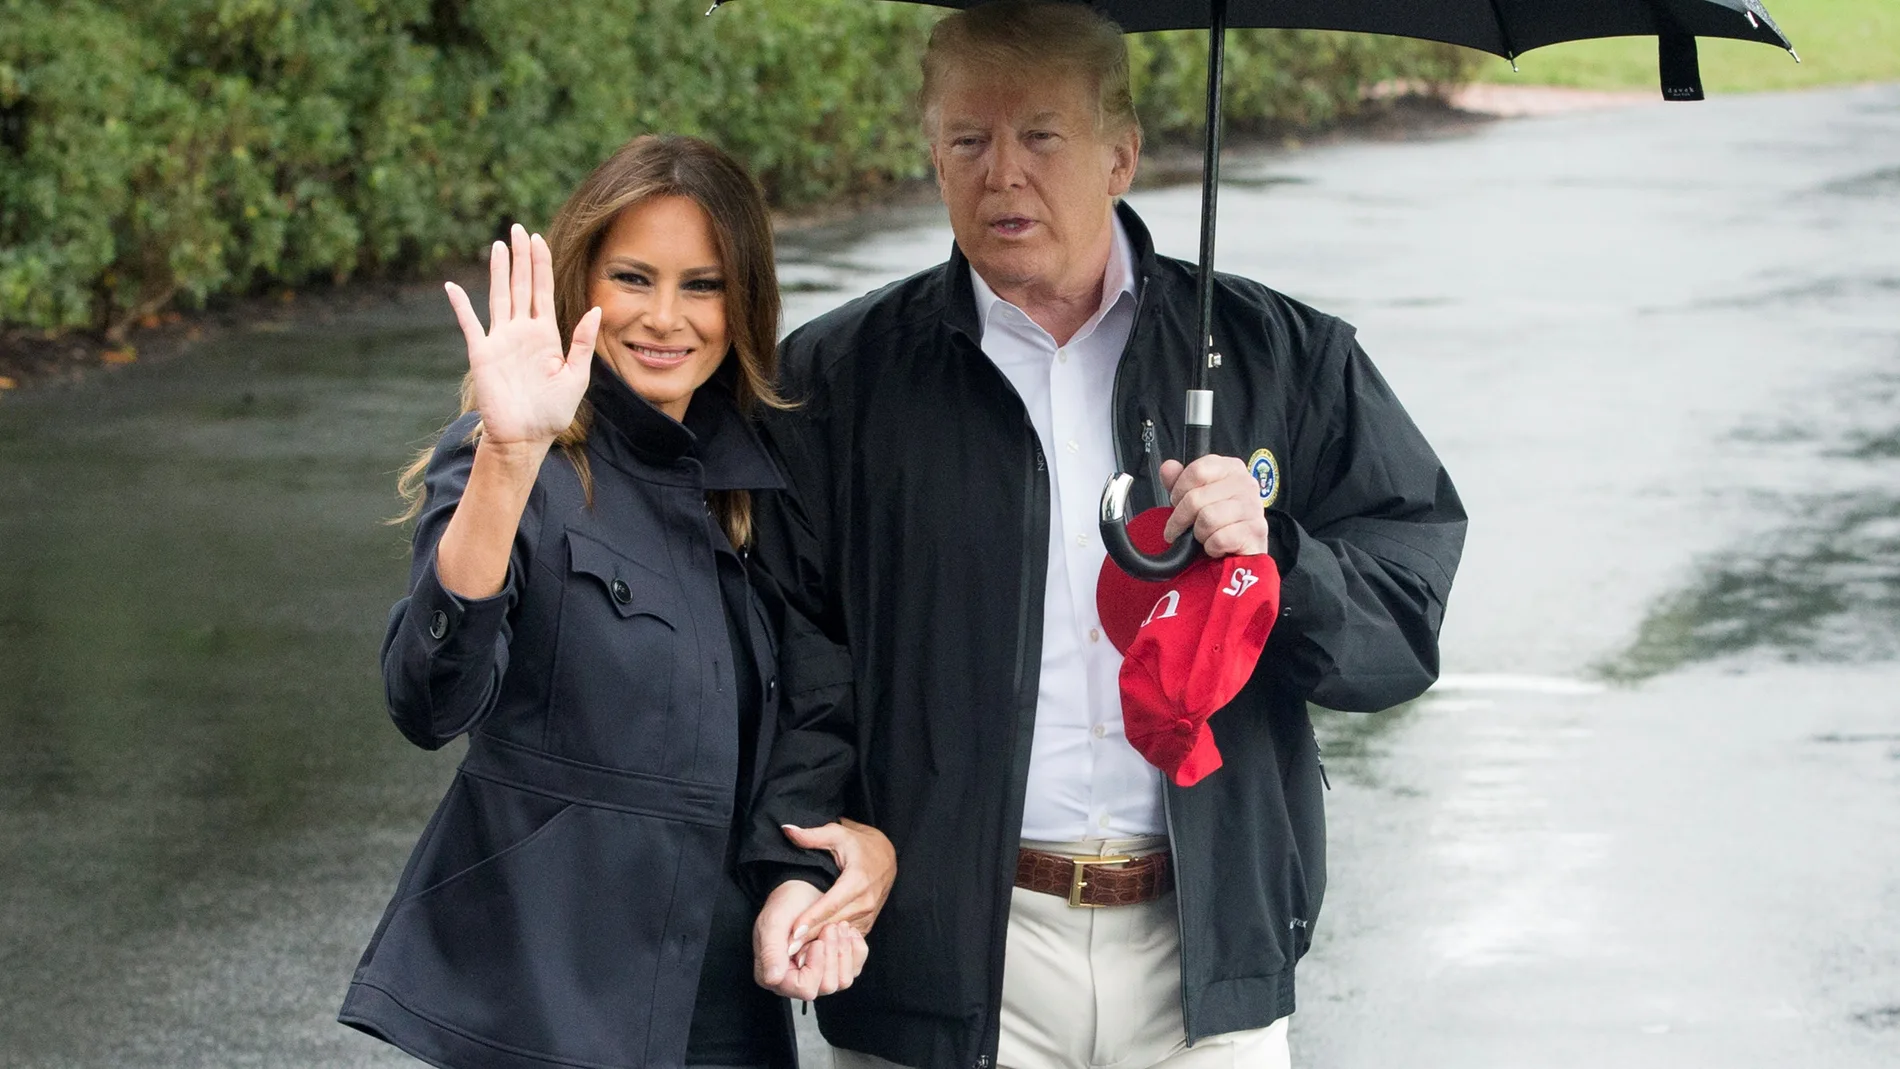 Lluvia de críticas a Donald Trump por no cubrir a Melania por el paraguas 